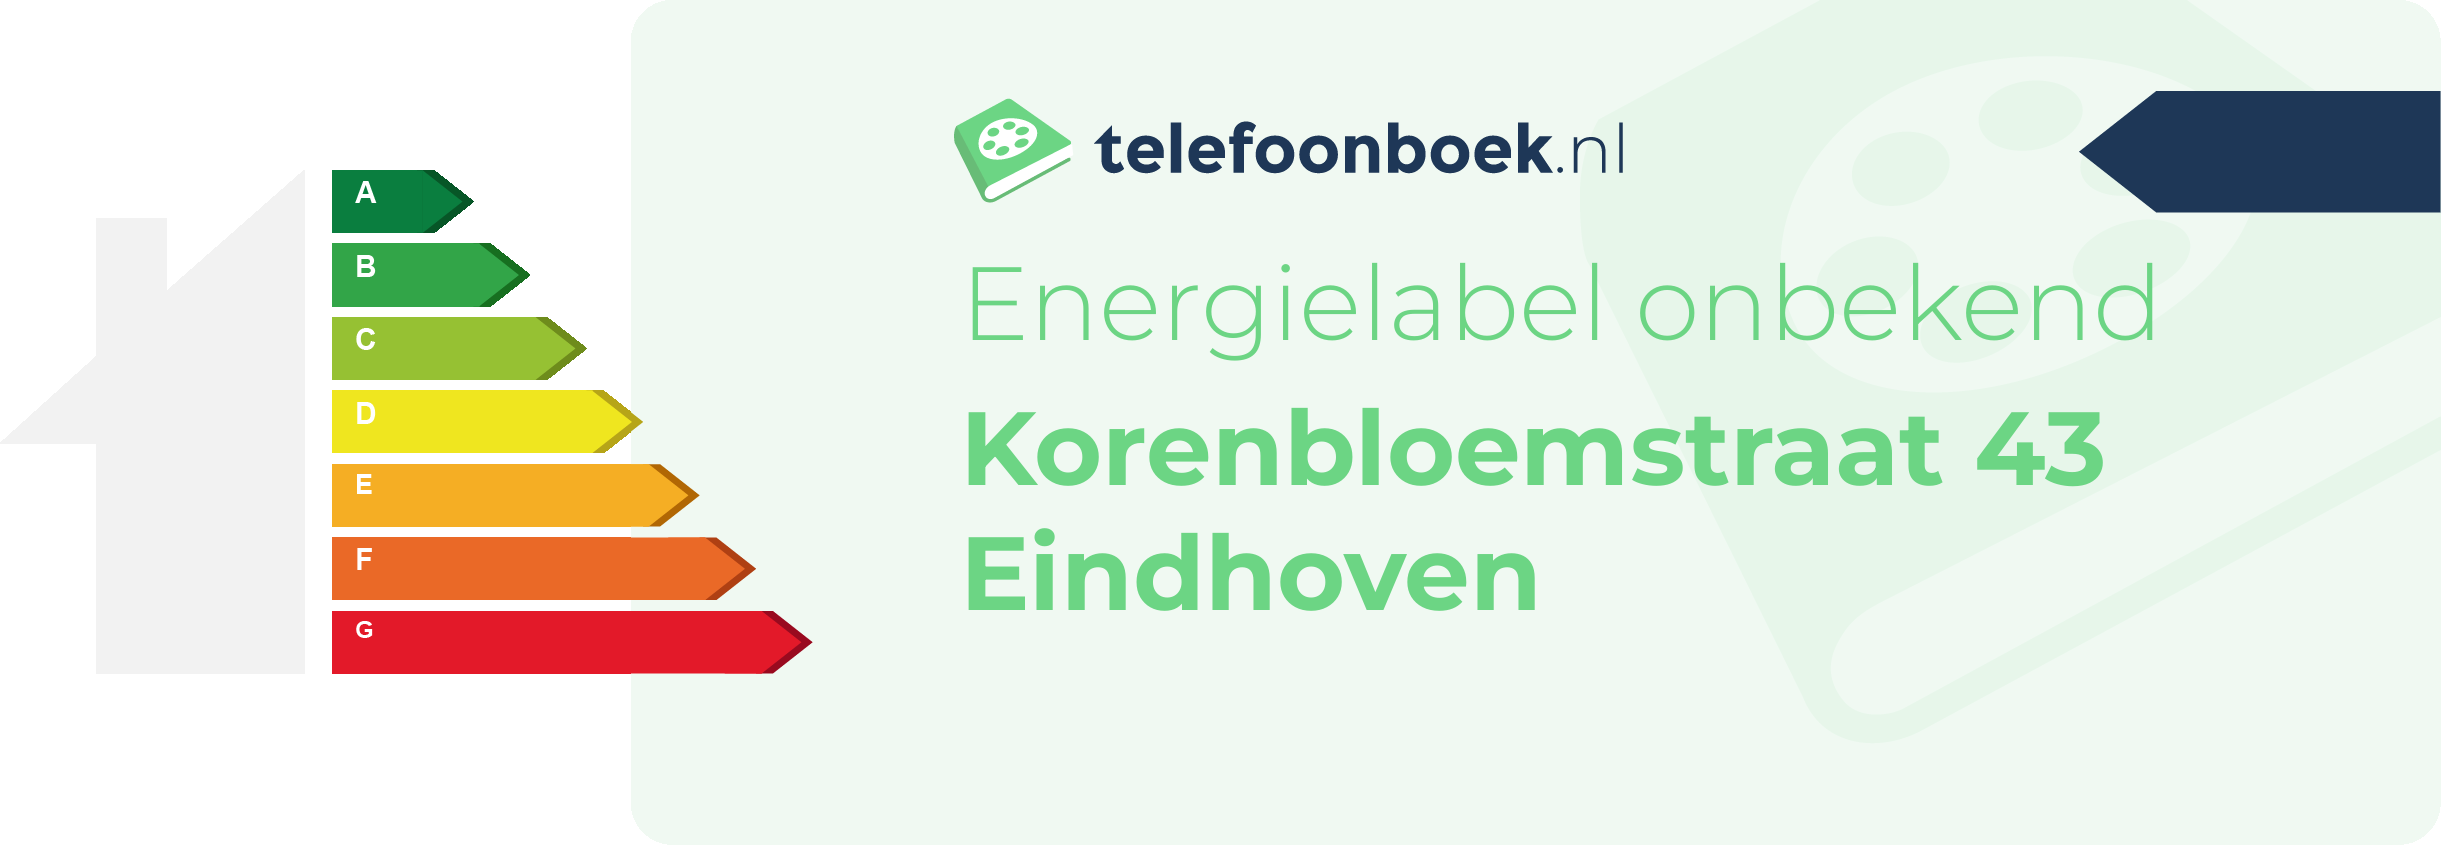 Energielabel Korenbloemstraat 43 Eindhoven